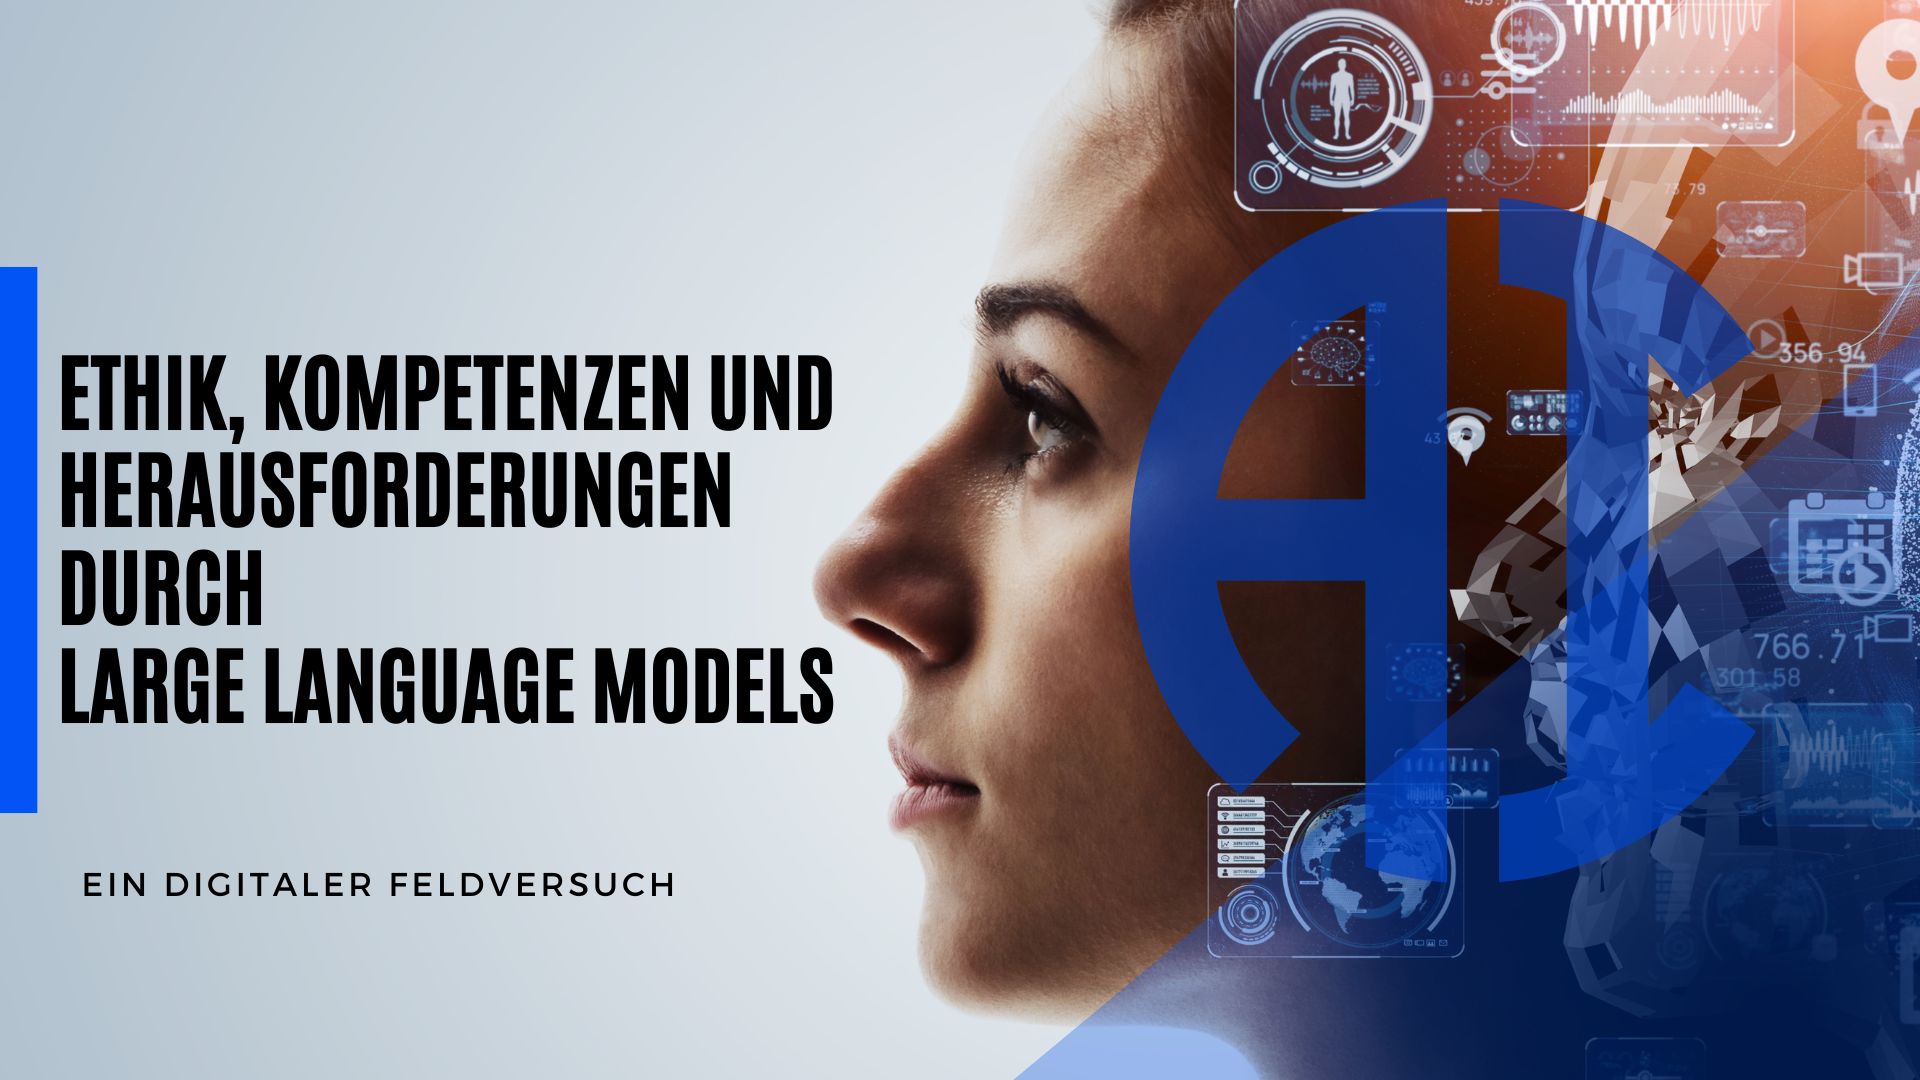 Du betrachtest gerade Ethik, Kompetenzen und Herausforderungen durch Large Language Models